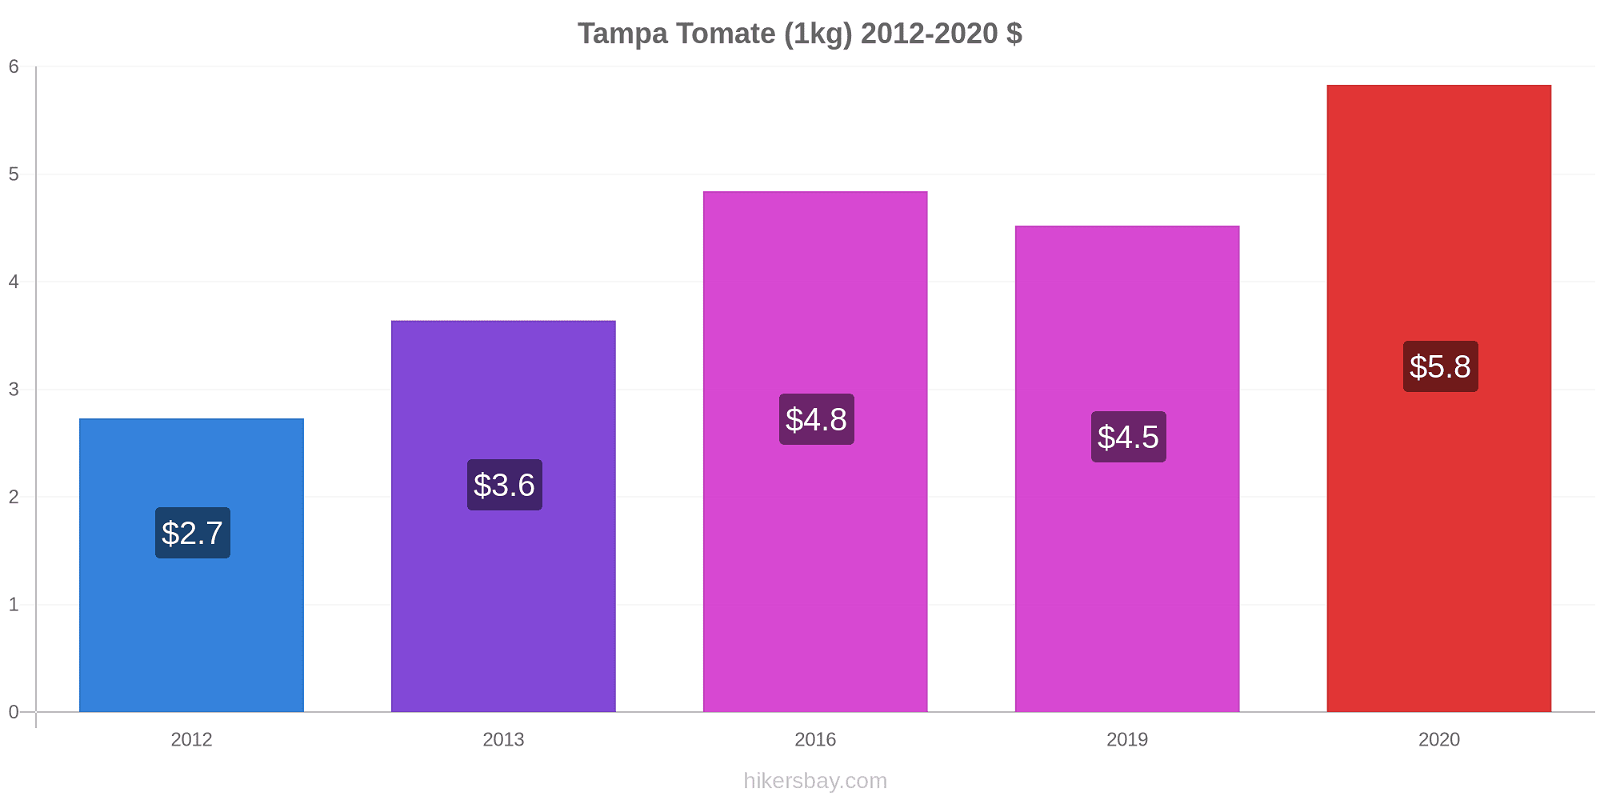 Tampa variação de preço Tomate (1kg) hikersbay.com